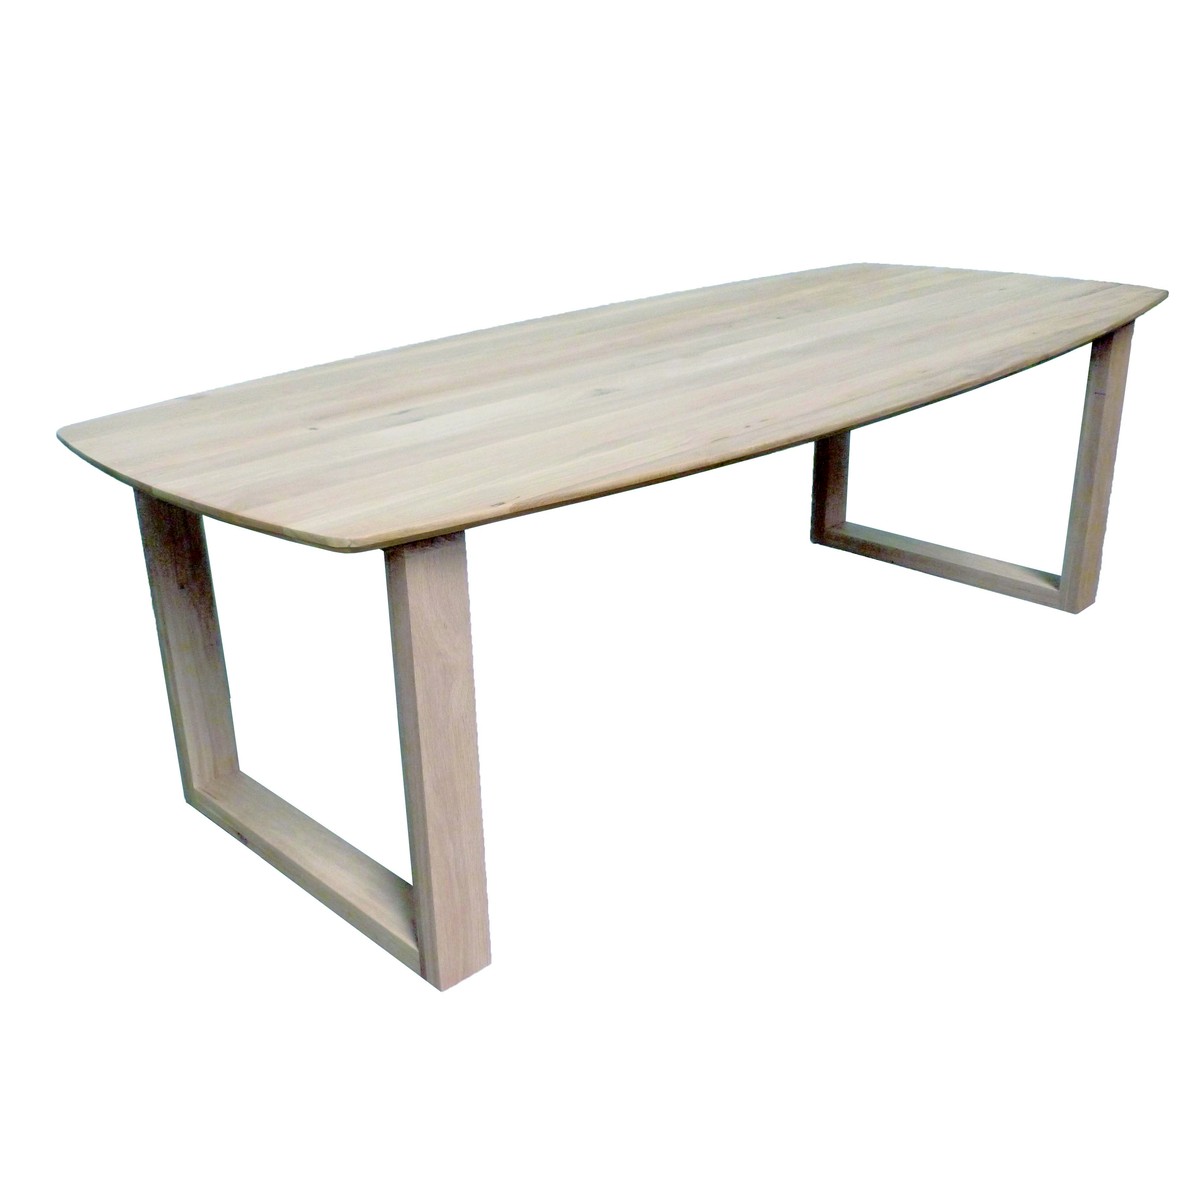   Table Lona Droit ovale  200x110x77cm